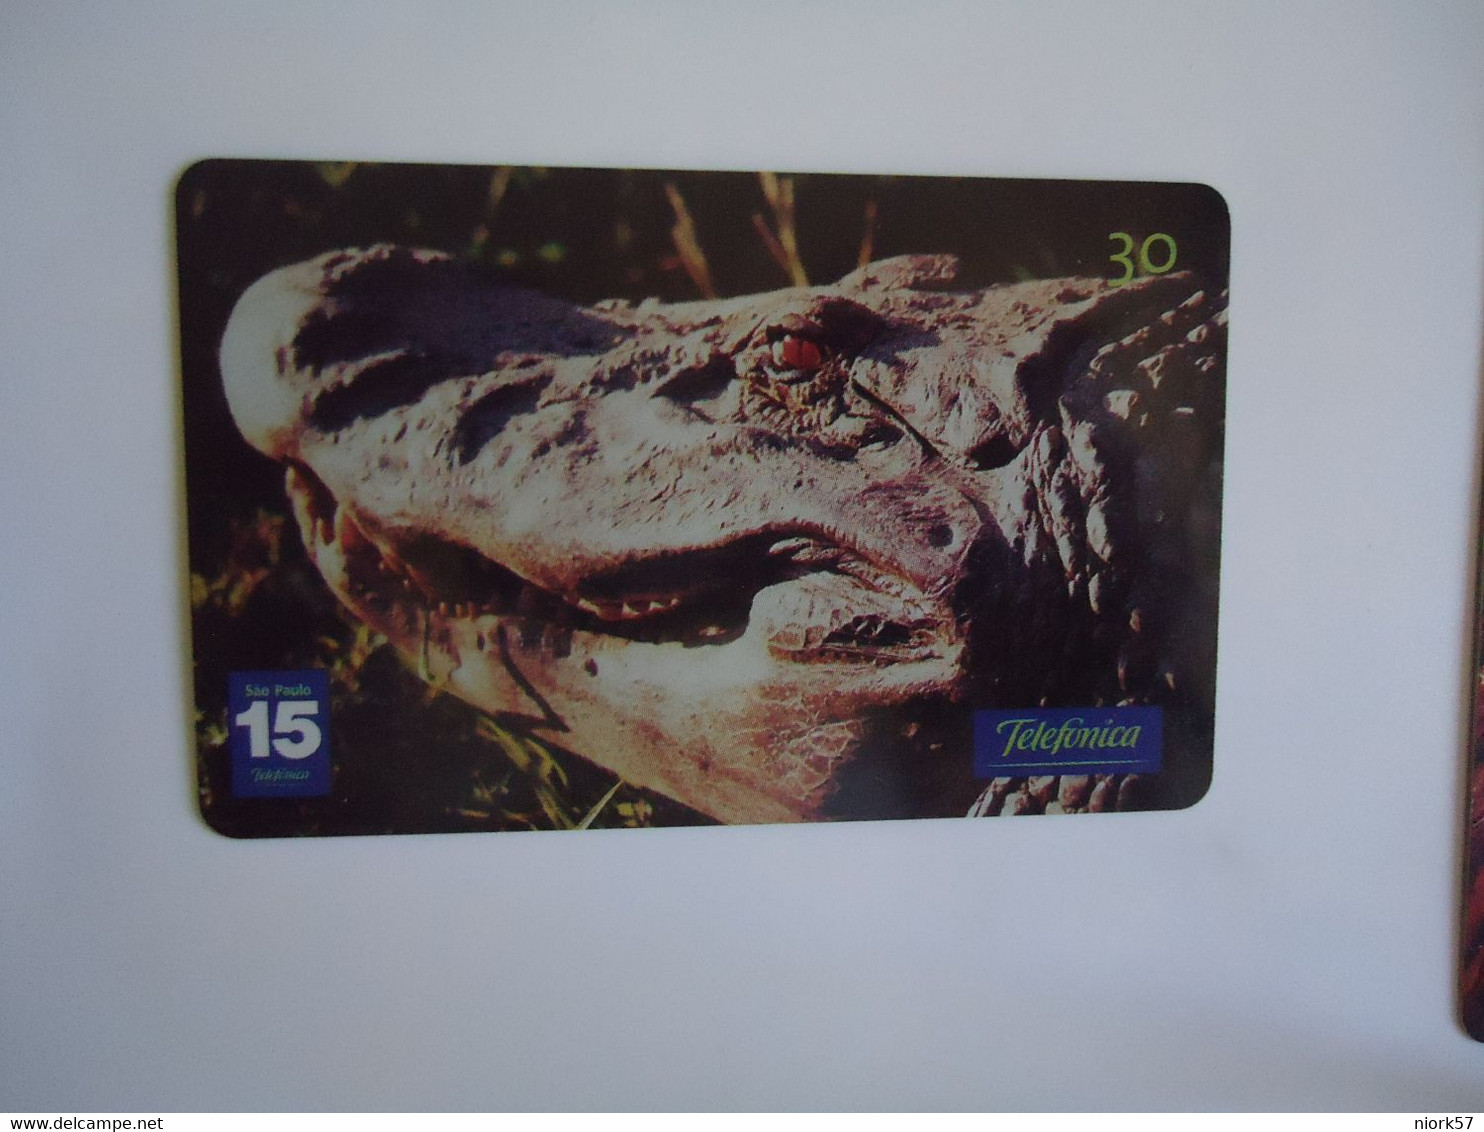 BRAZIL USED CARDS ANIMALS CROCODILES - Cocodrilos Y Aligatores